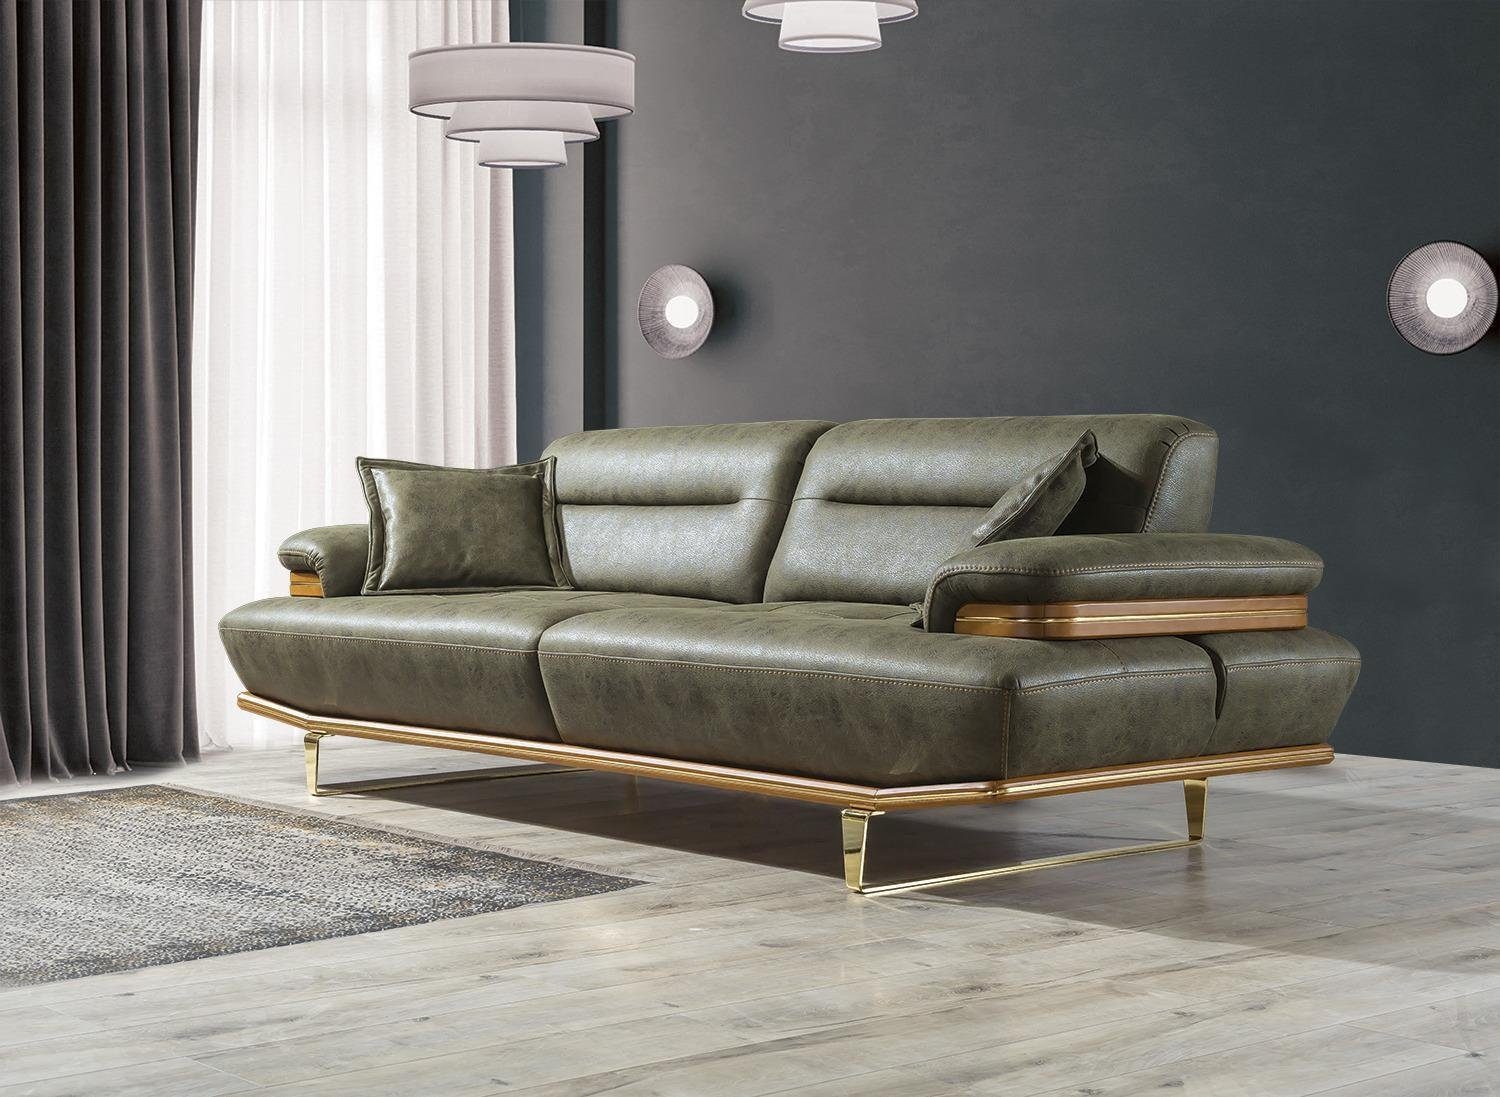 Made Couch Europa Dreisitzer Teile, JVmoebel Möbel 1 Polster, in Wohnzimmer Modern Sofa Sofa Einrichtung